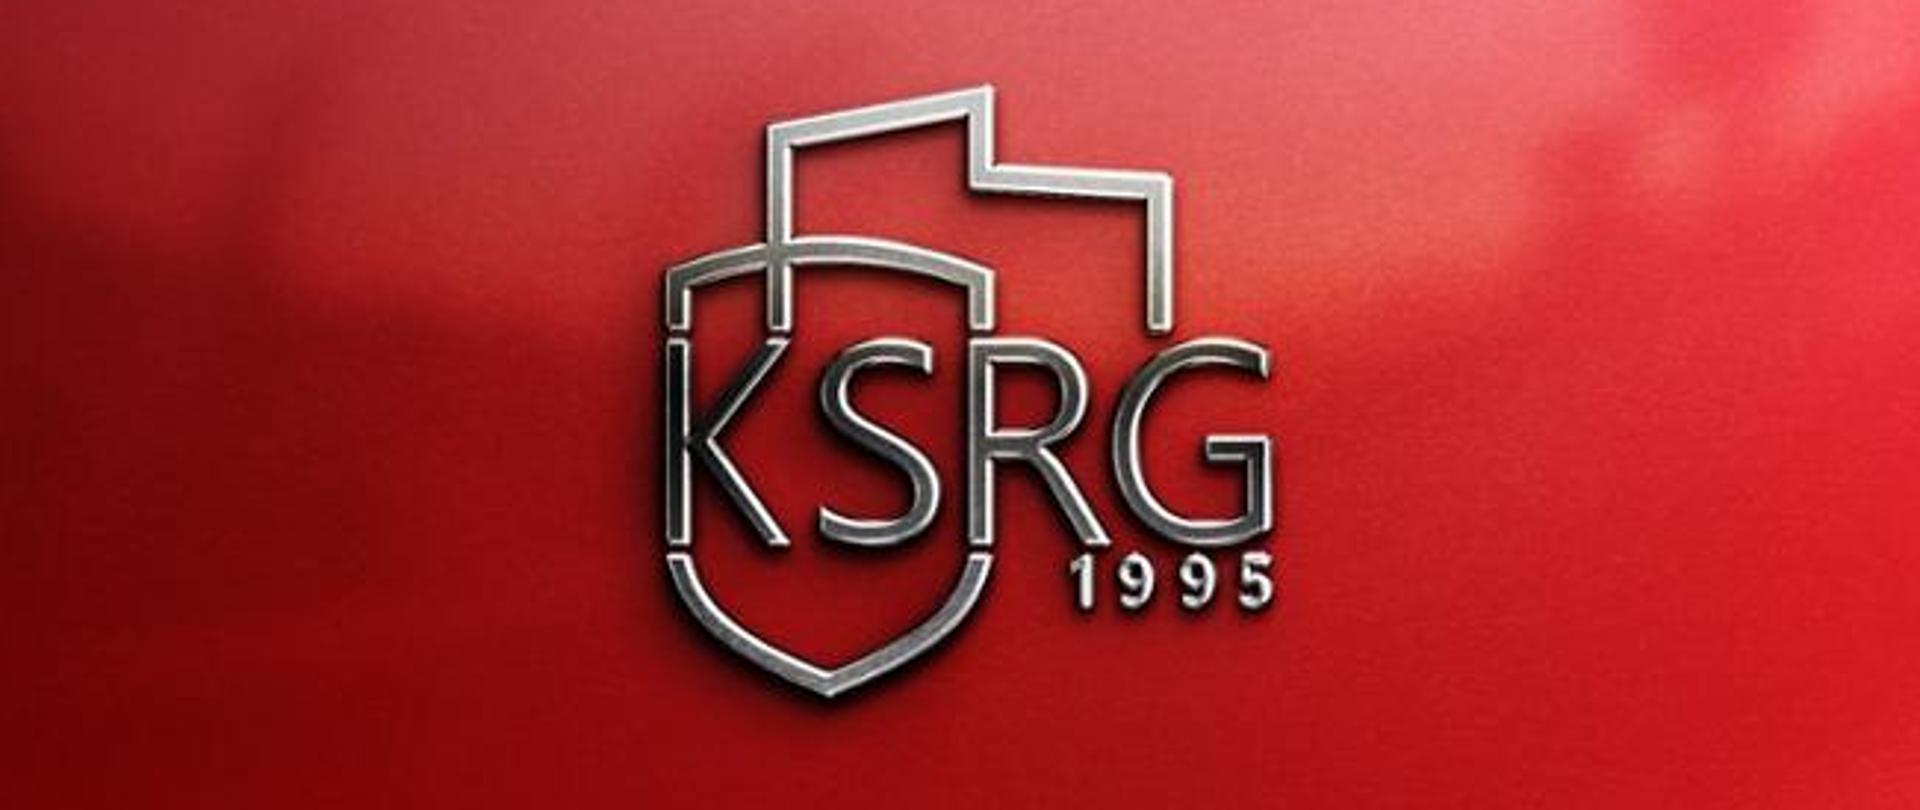 Logotyp KSRG na czerwonym tle